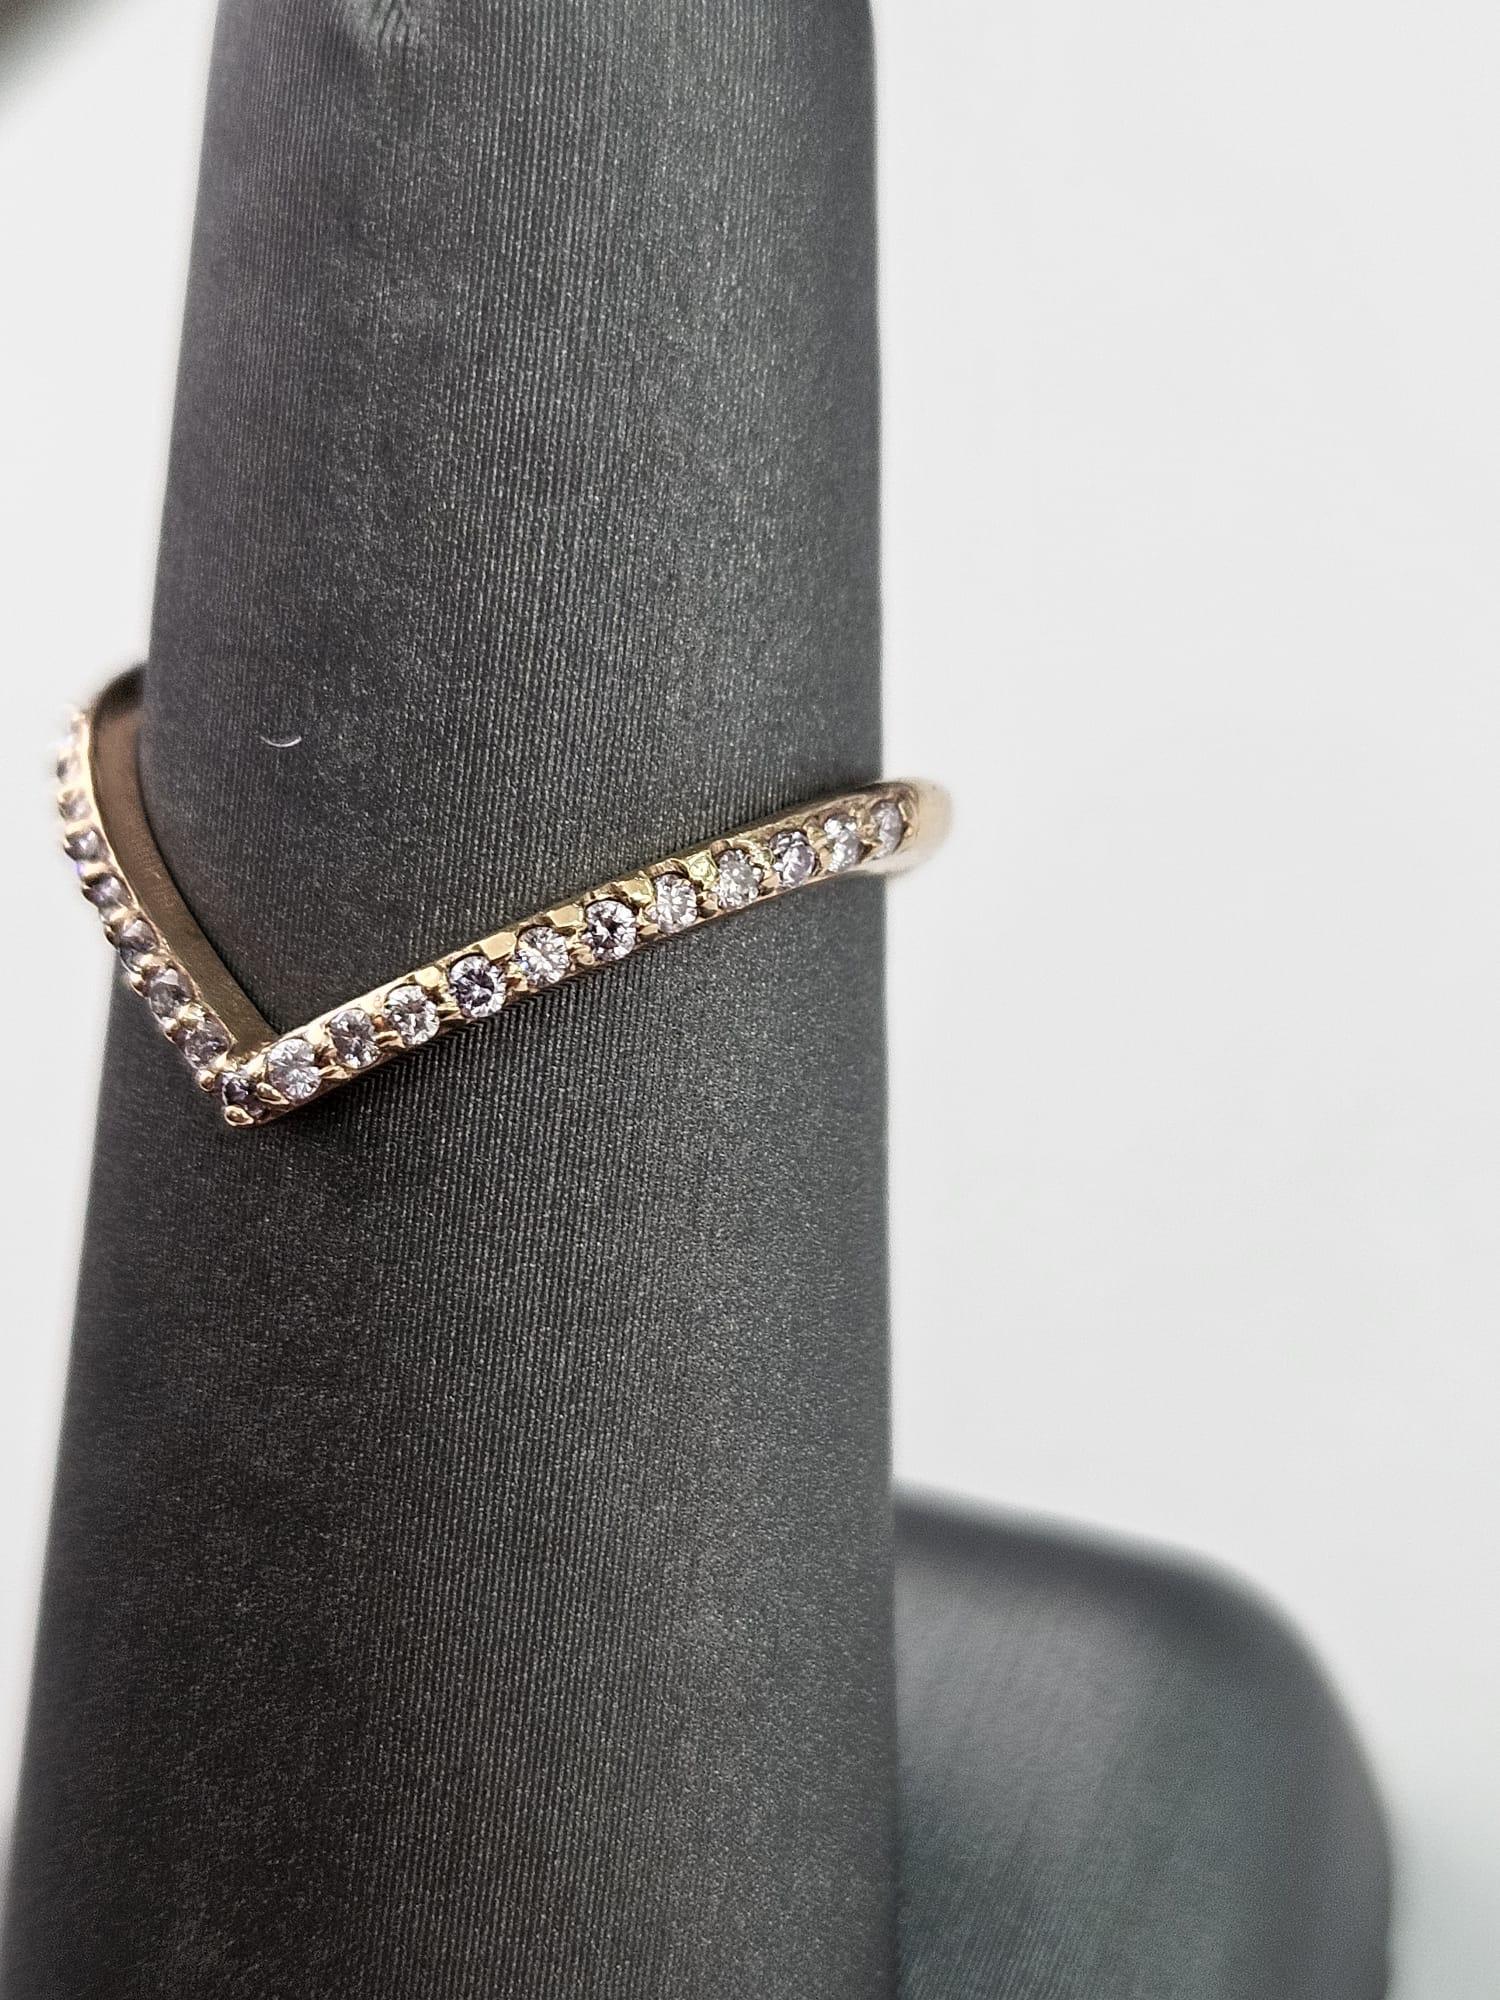 Ein bezaubernder und eleganter 0,20 Karat Pink Diamond Bandring, der liebevoll in luxuriösem Roségold gefertigt wurde und die Form eines Herzens hat. In der Mitte des herzförmigen Rings befindet sich ein einzelner pinkfarbener Diamant mit einem